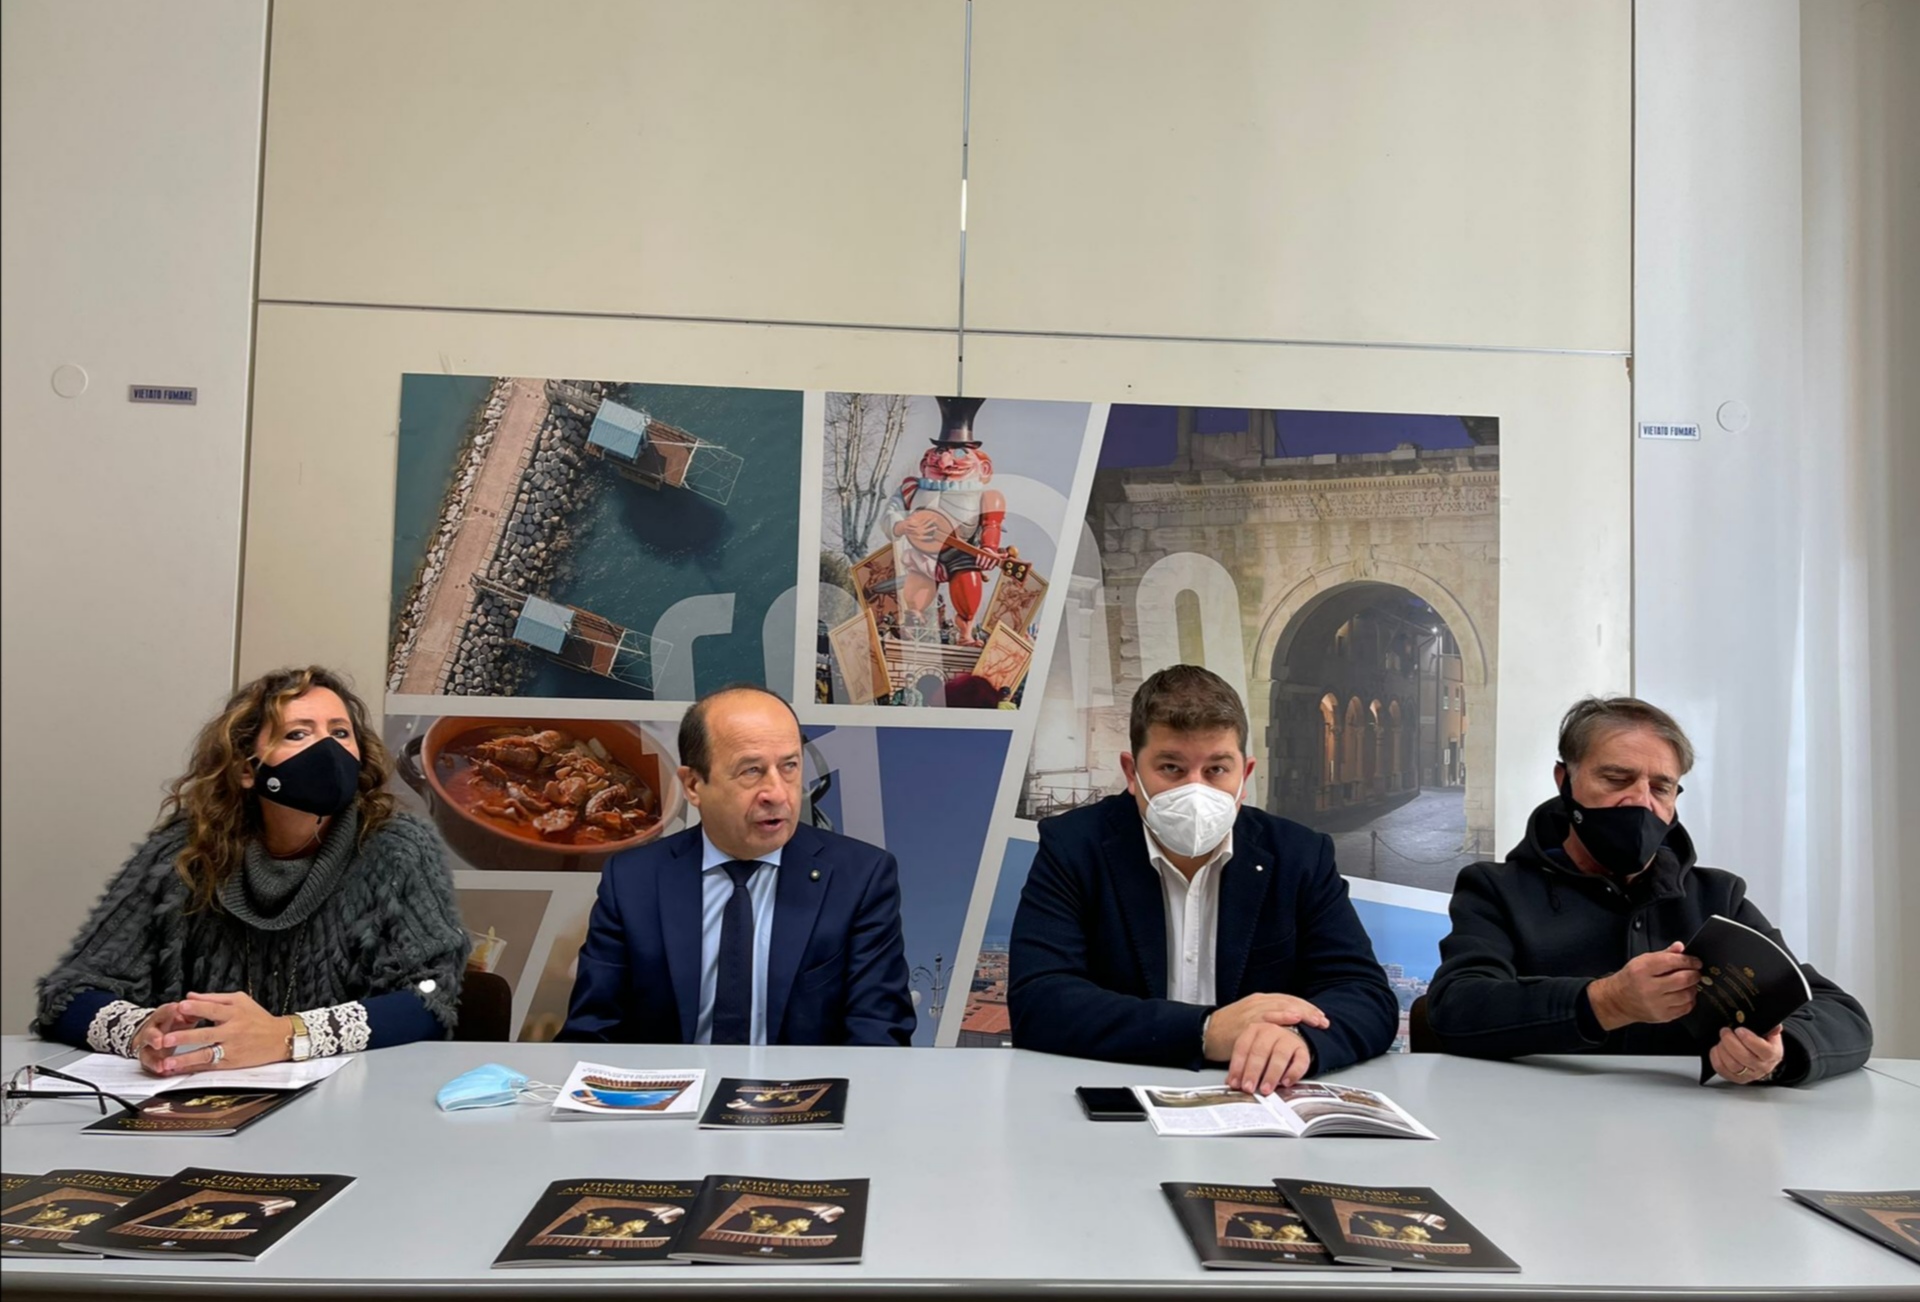 Confcommercio di Pesaro e Urbino - Presentata la nuova edizione dell'Itinerario Archeologico di Confcommercio Marche Nord